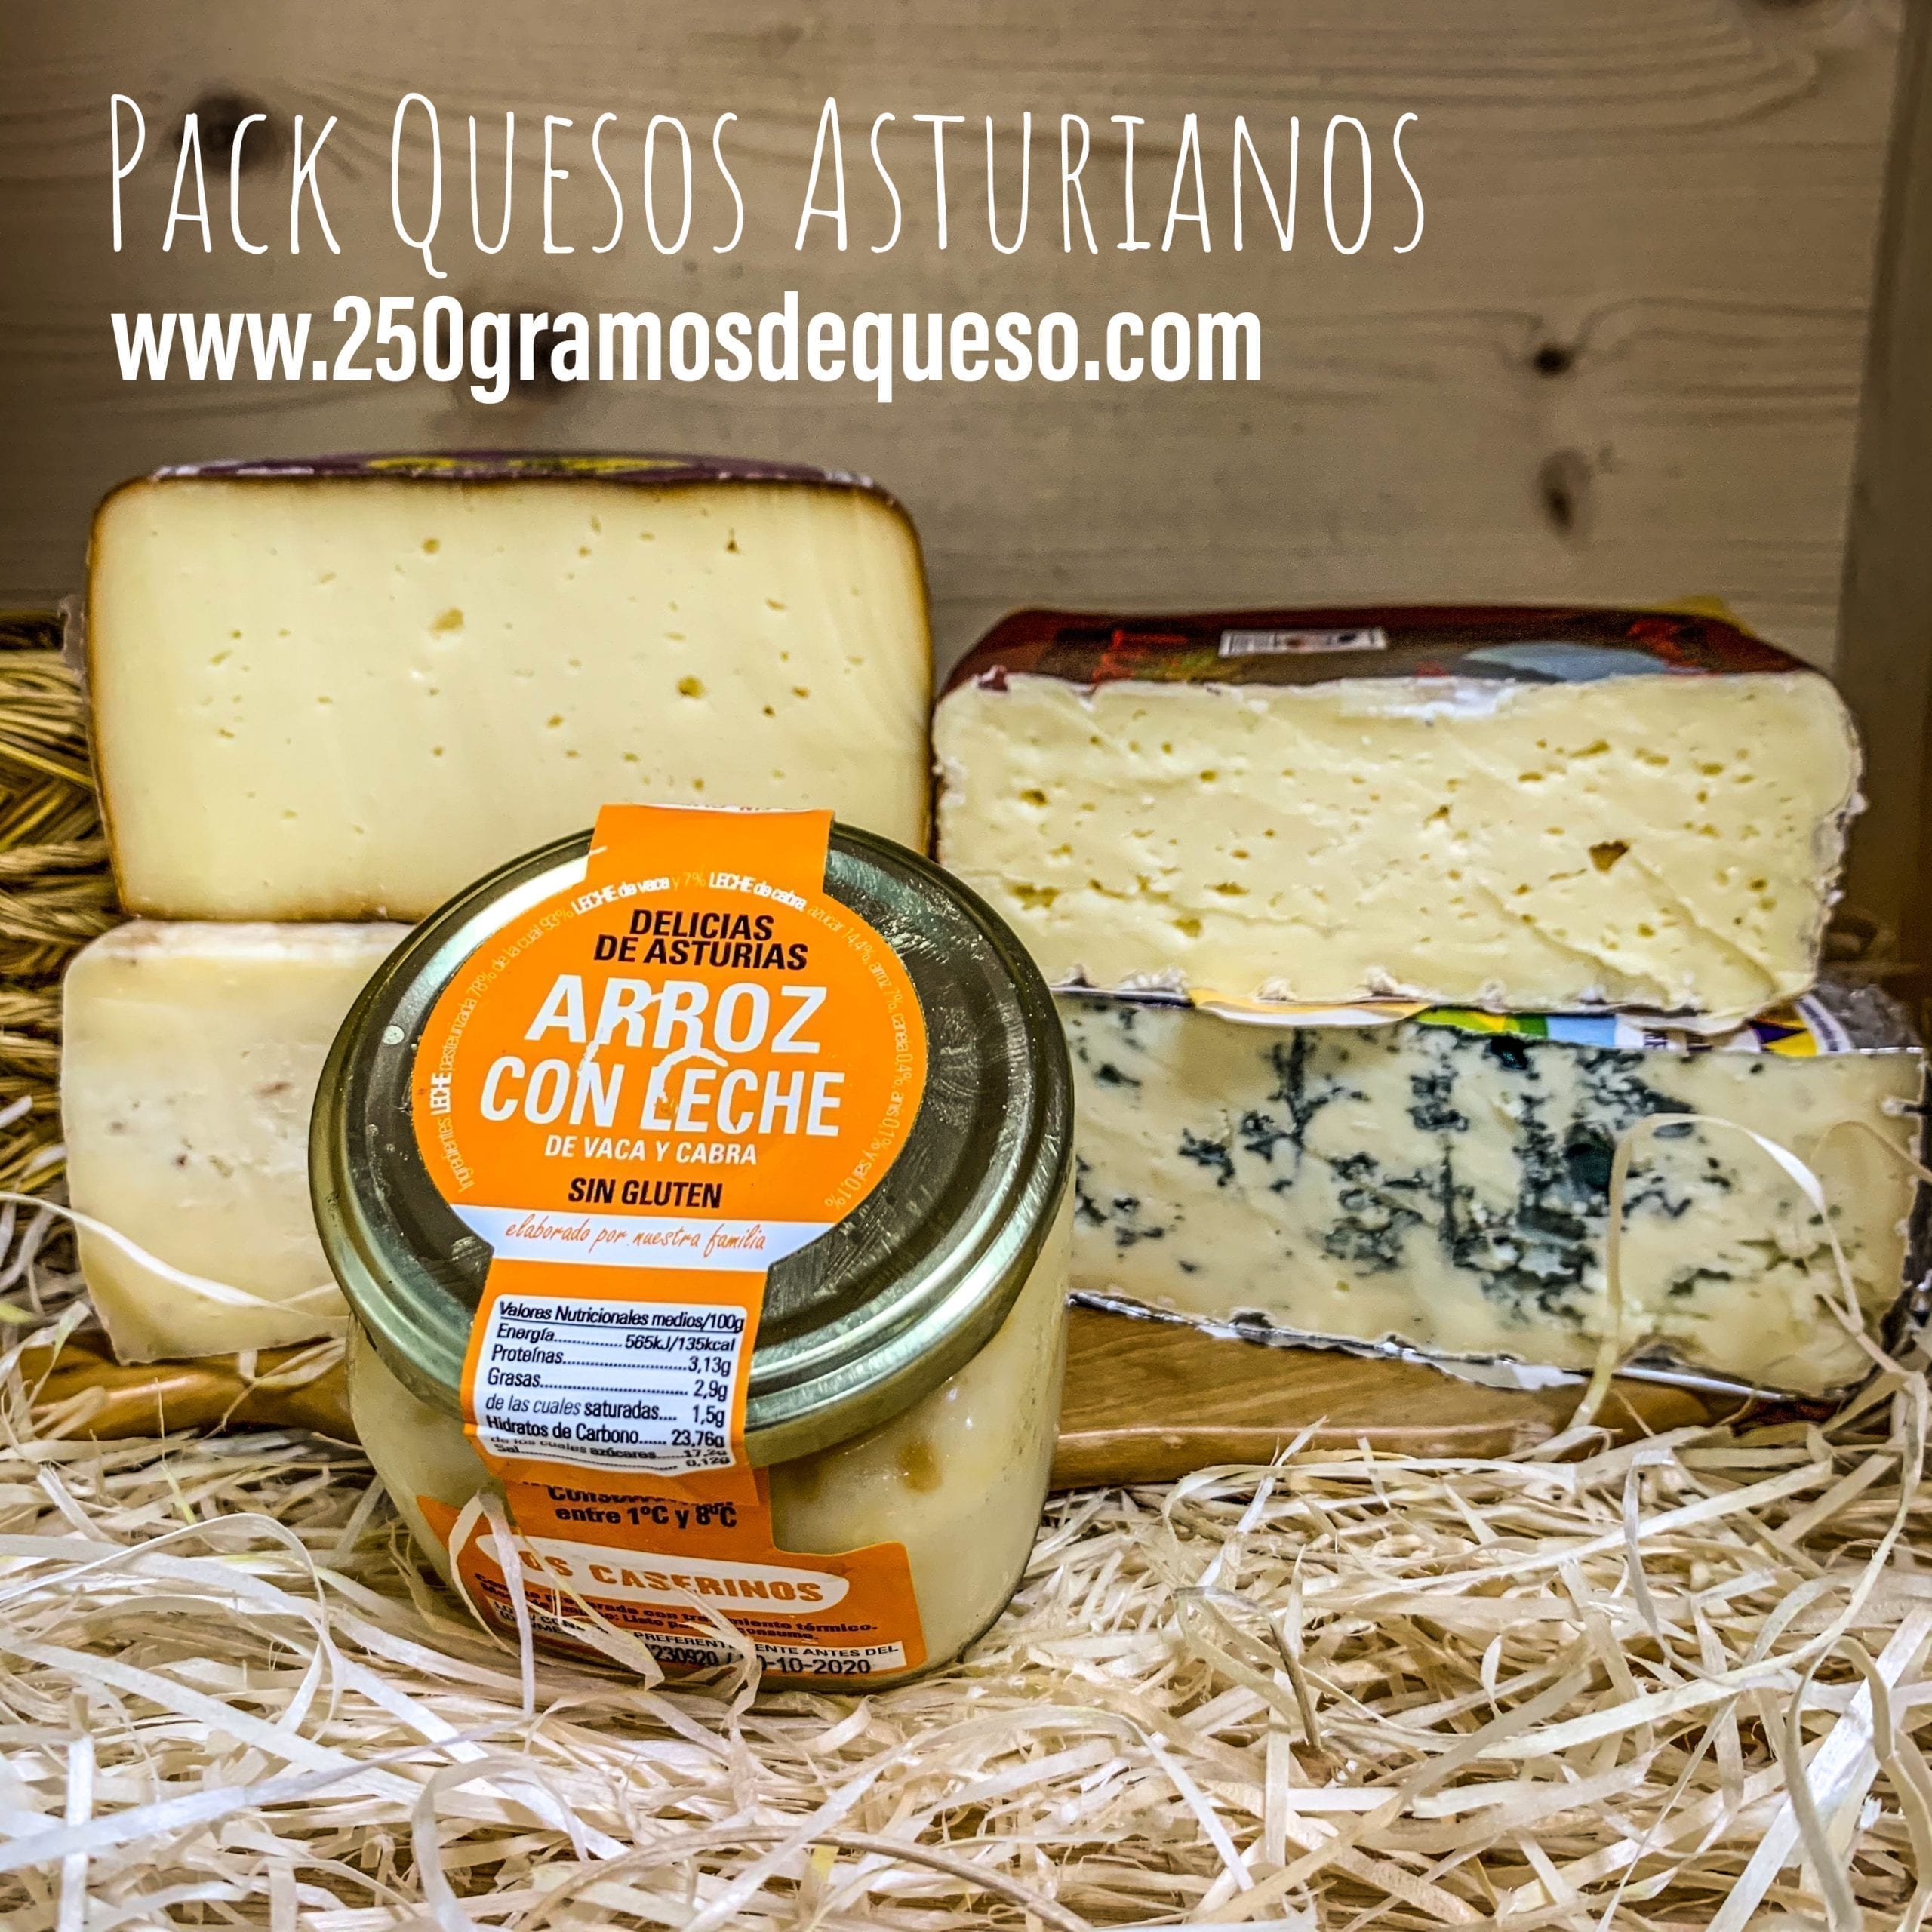 Pack de productos asturianos